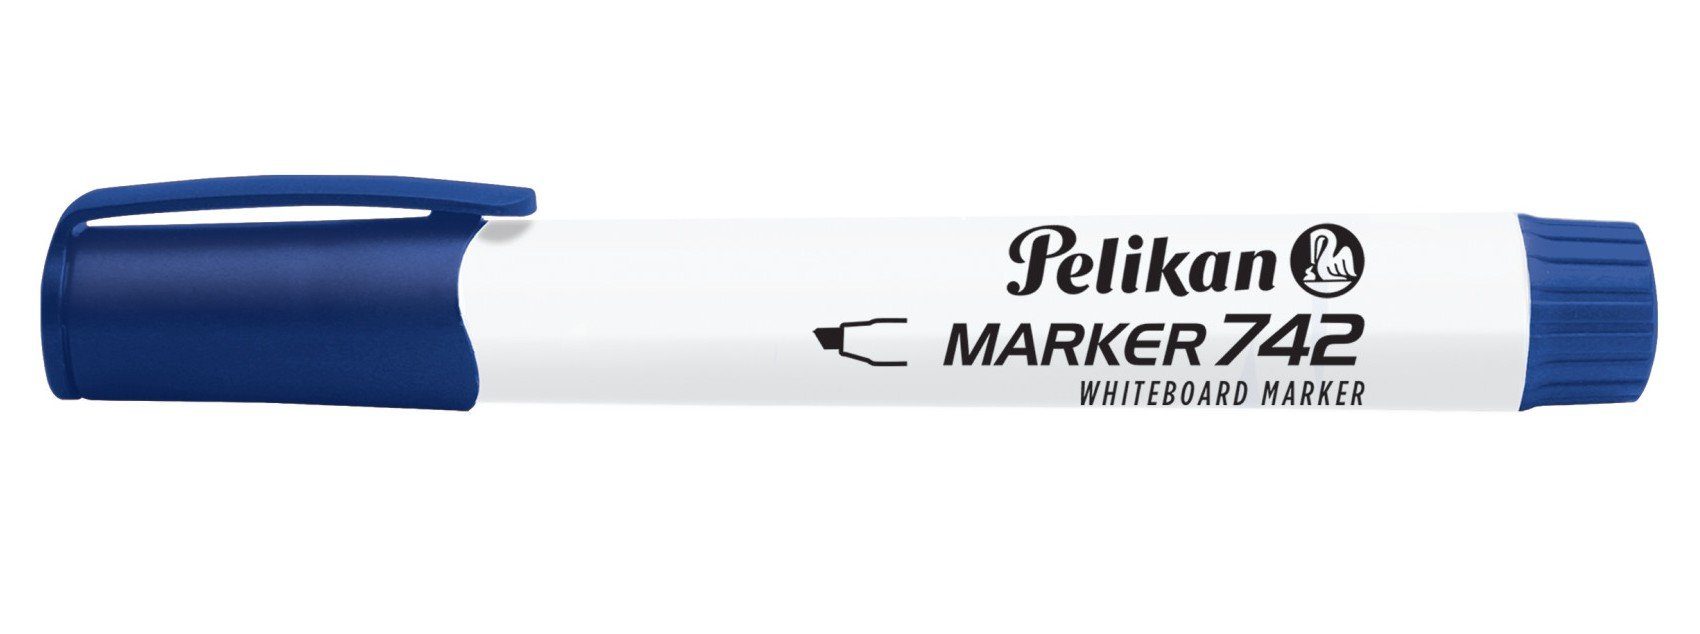 Pelikan Marker Pelikan Whiteboard Marker 742 blau